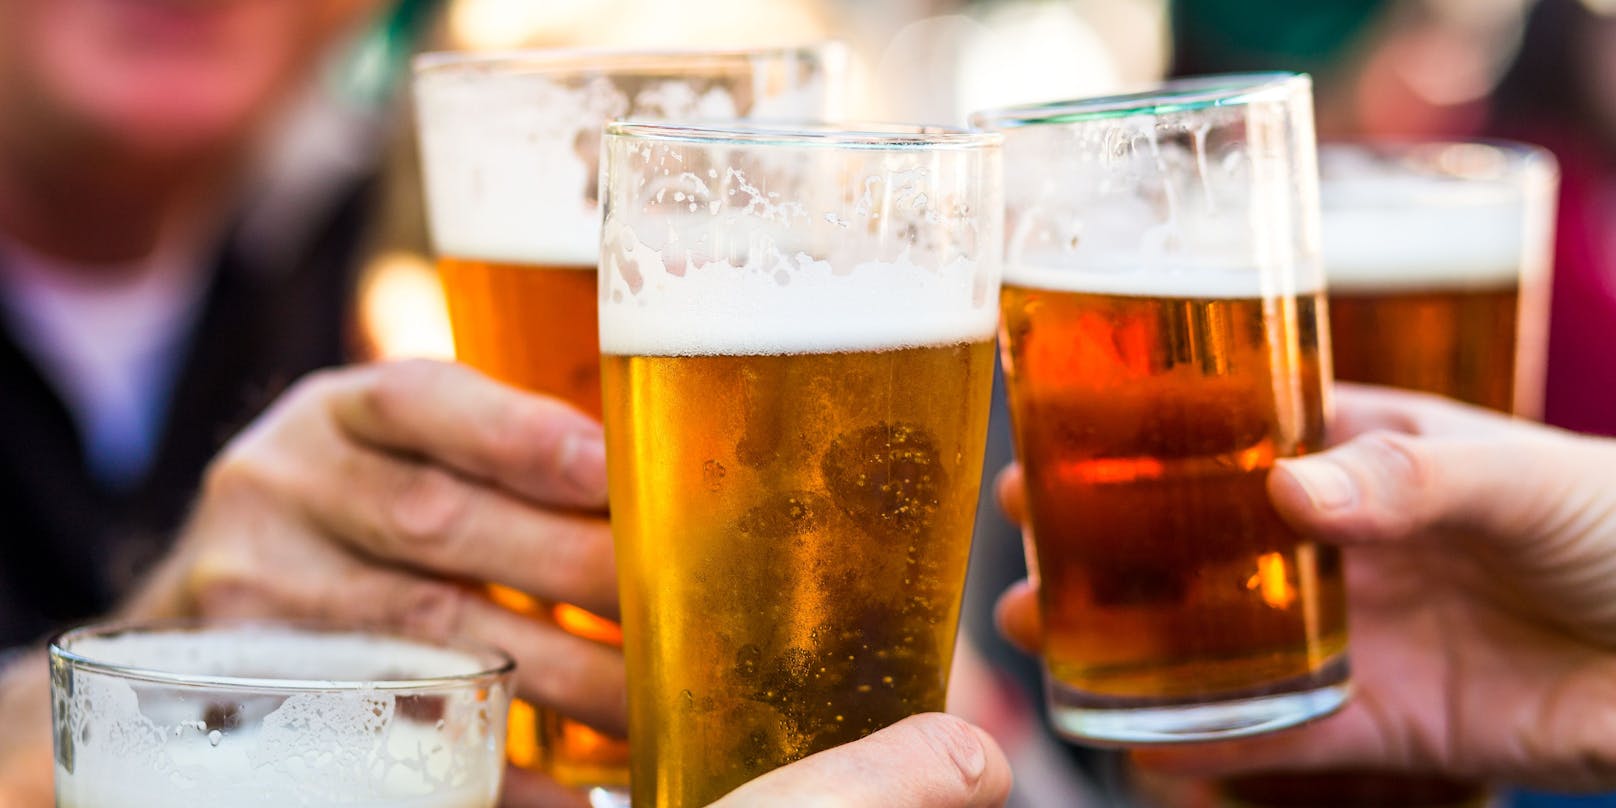 Vergeht den Österreichern die Lust auf Bier? 2021 wurde ein historisches Tief erreicht.